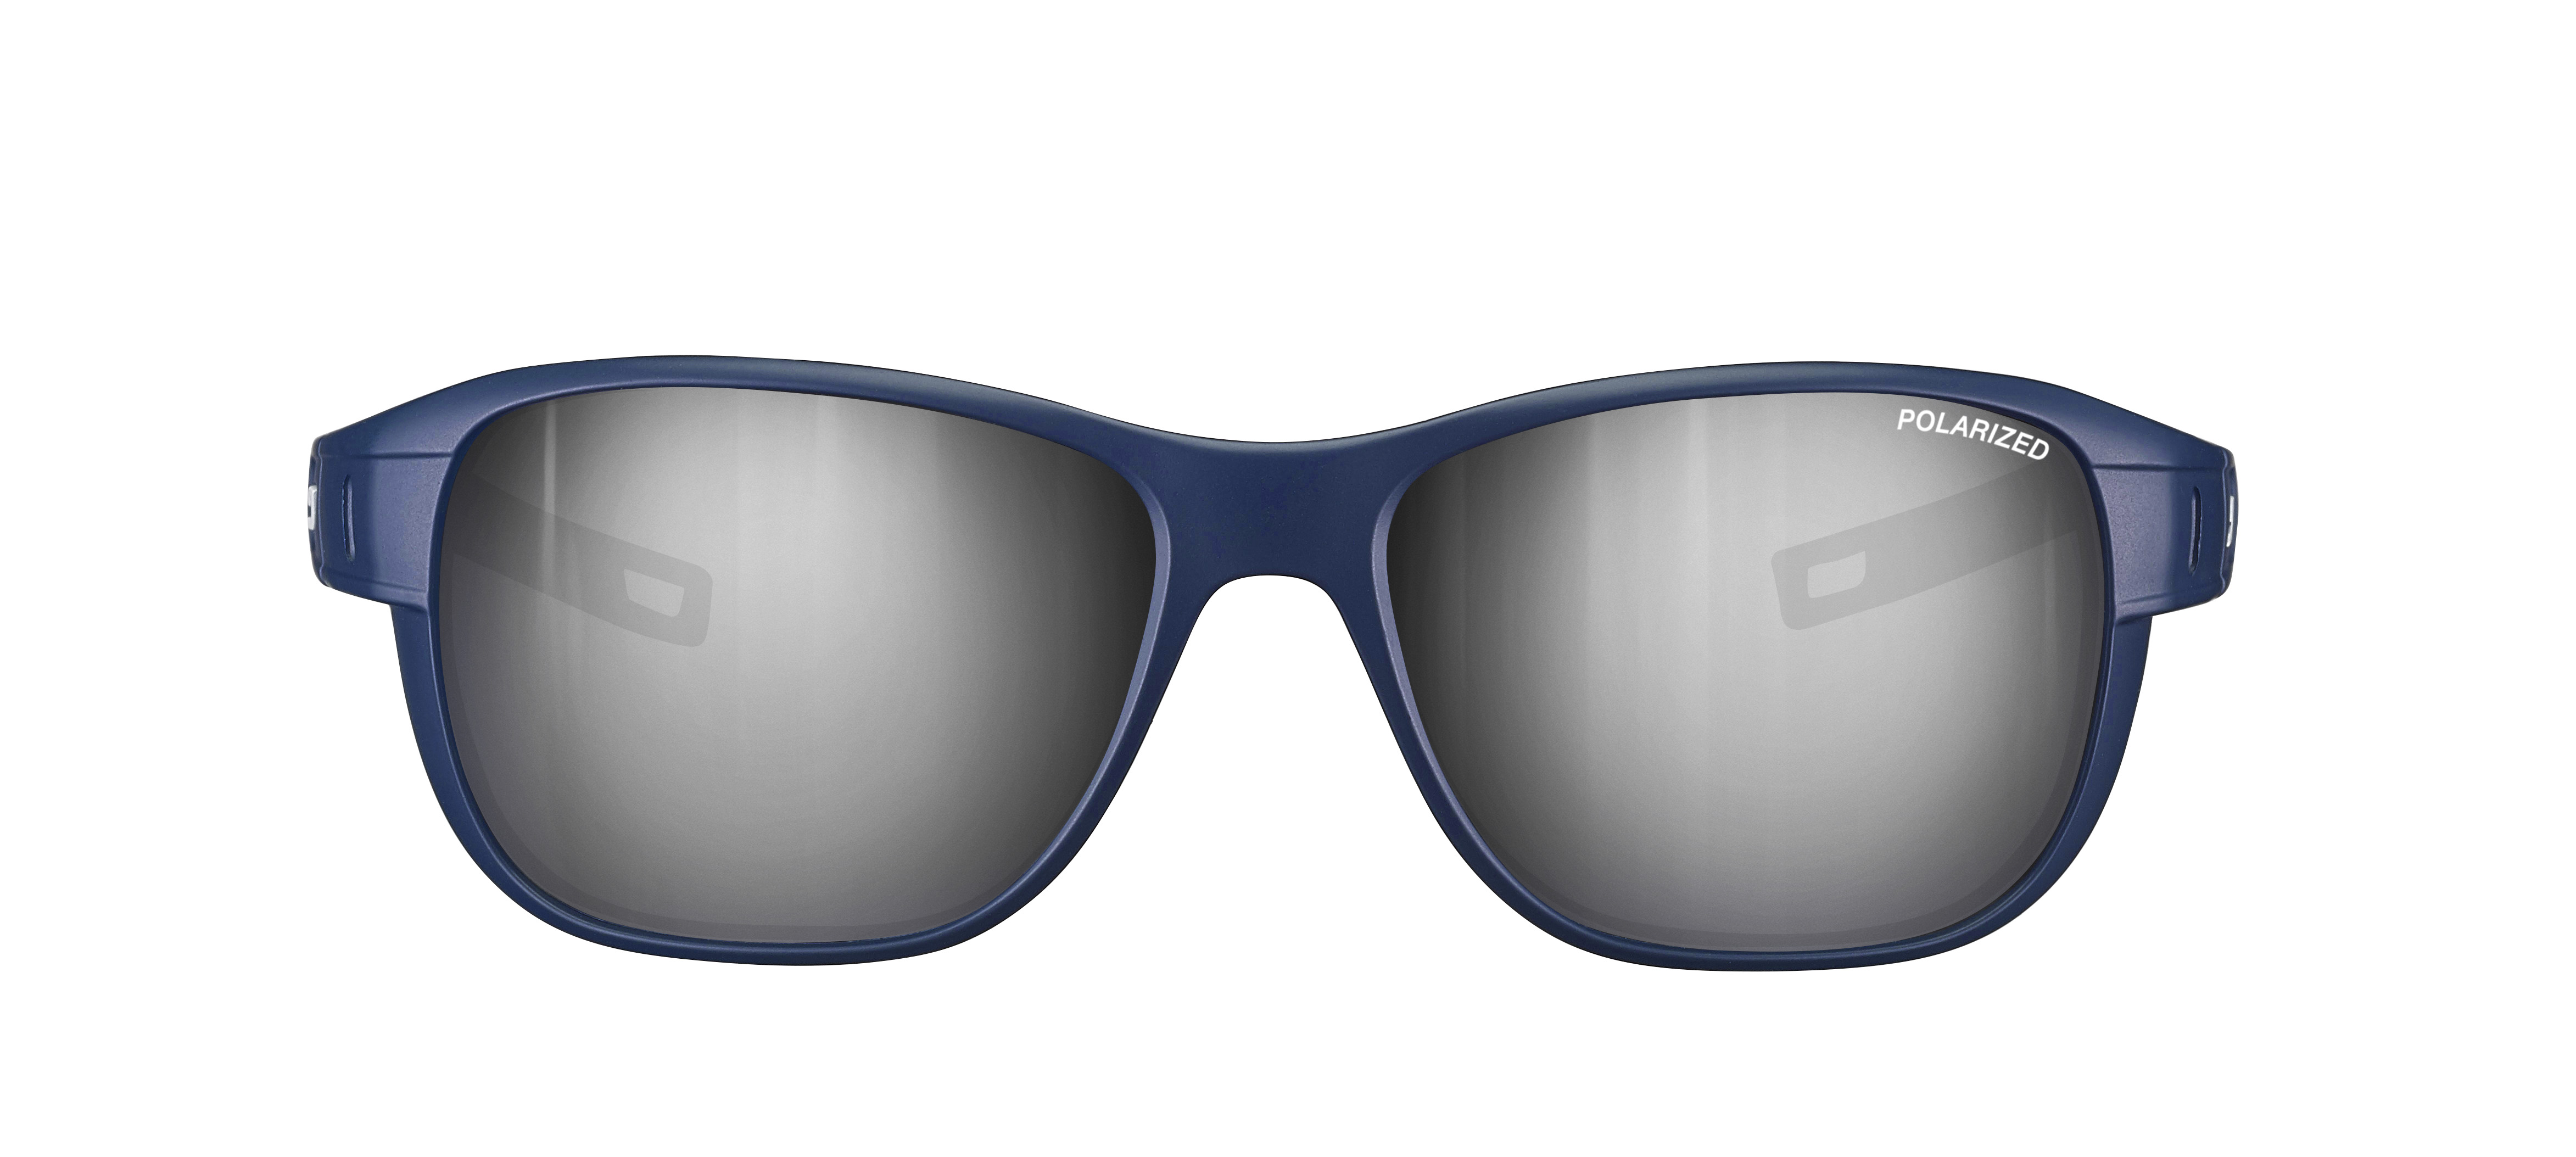 Sunglasses Julbo Js558 camino m, dark blue colour - Doyle